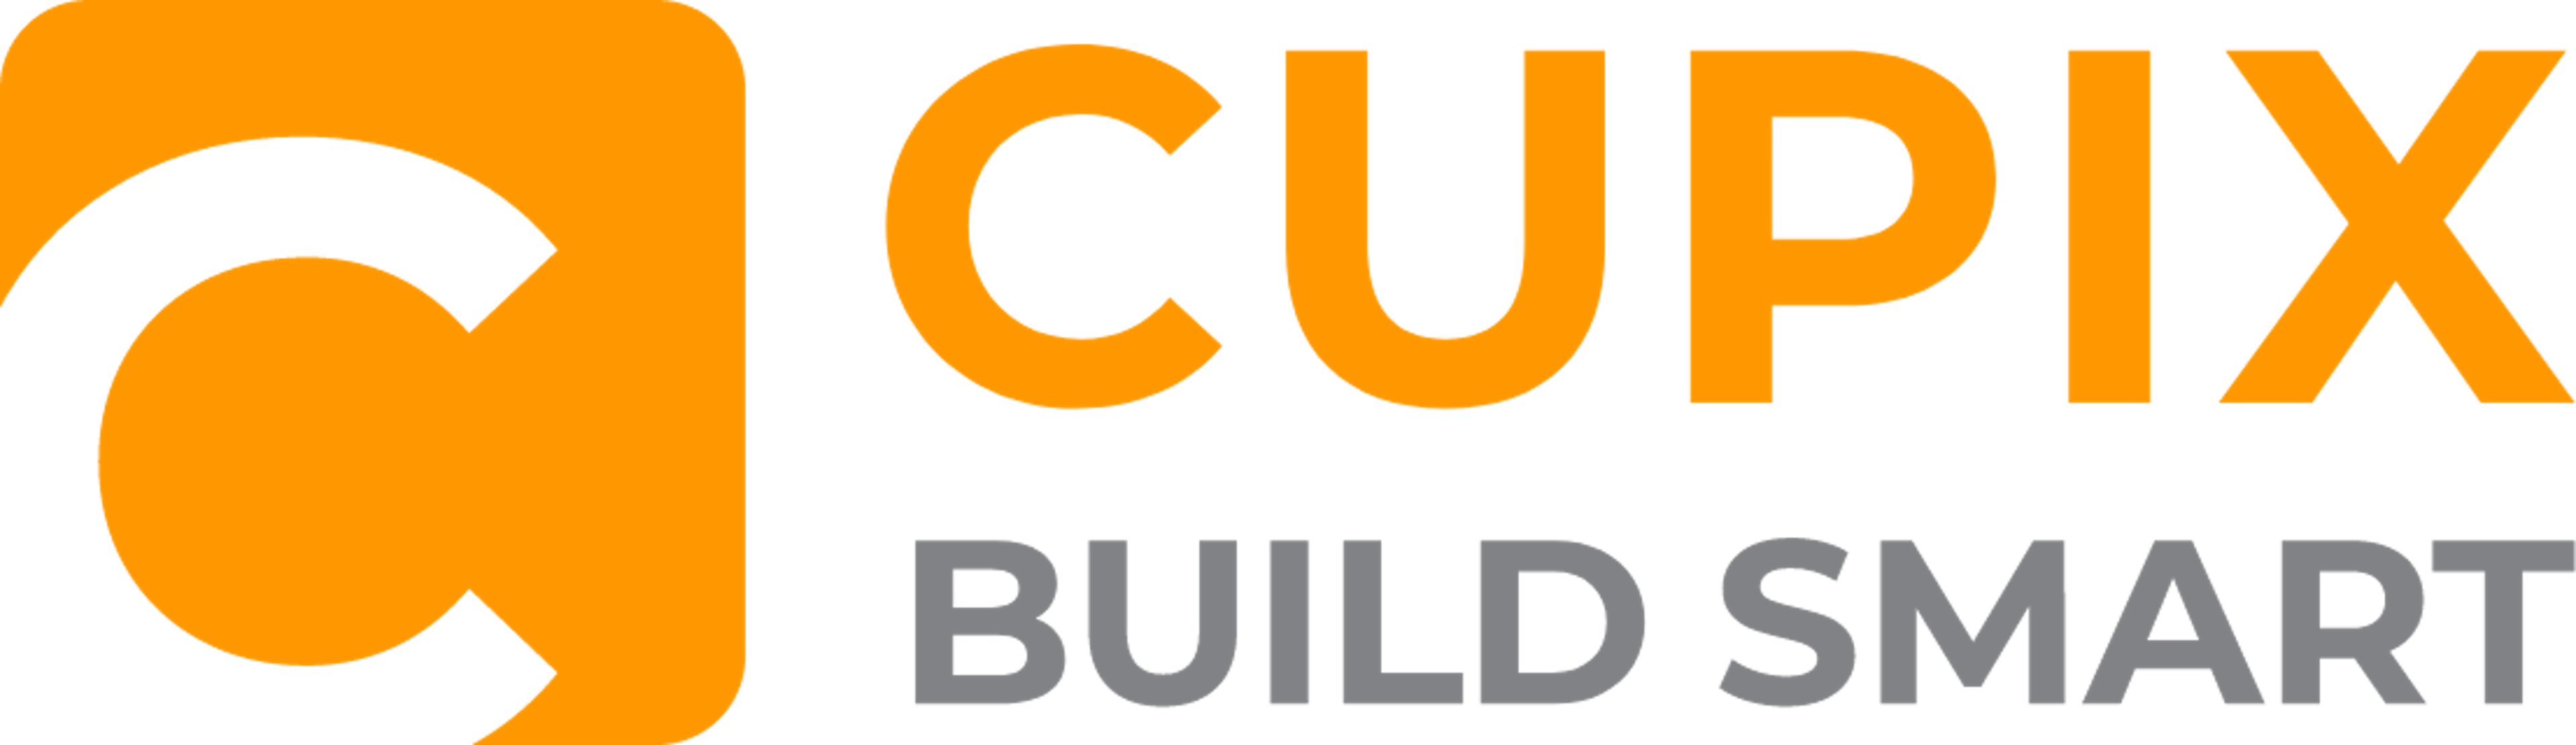 Cupix Logo